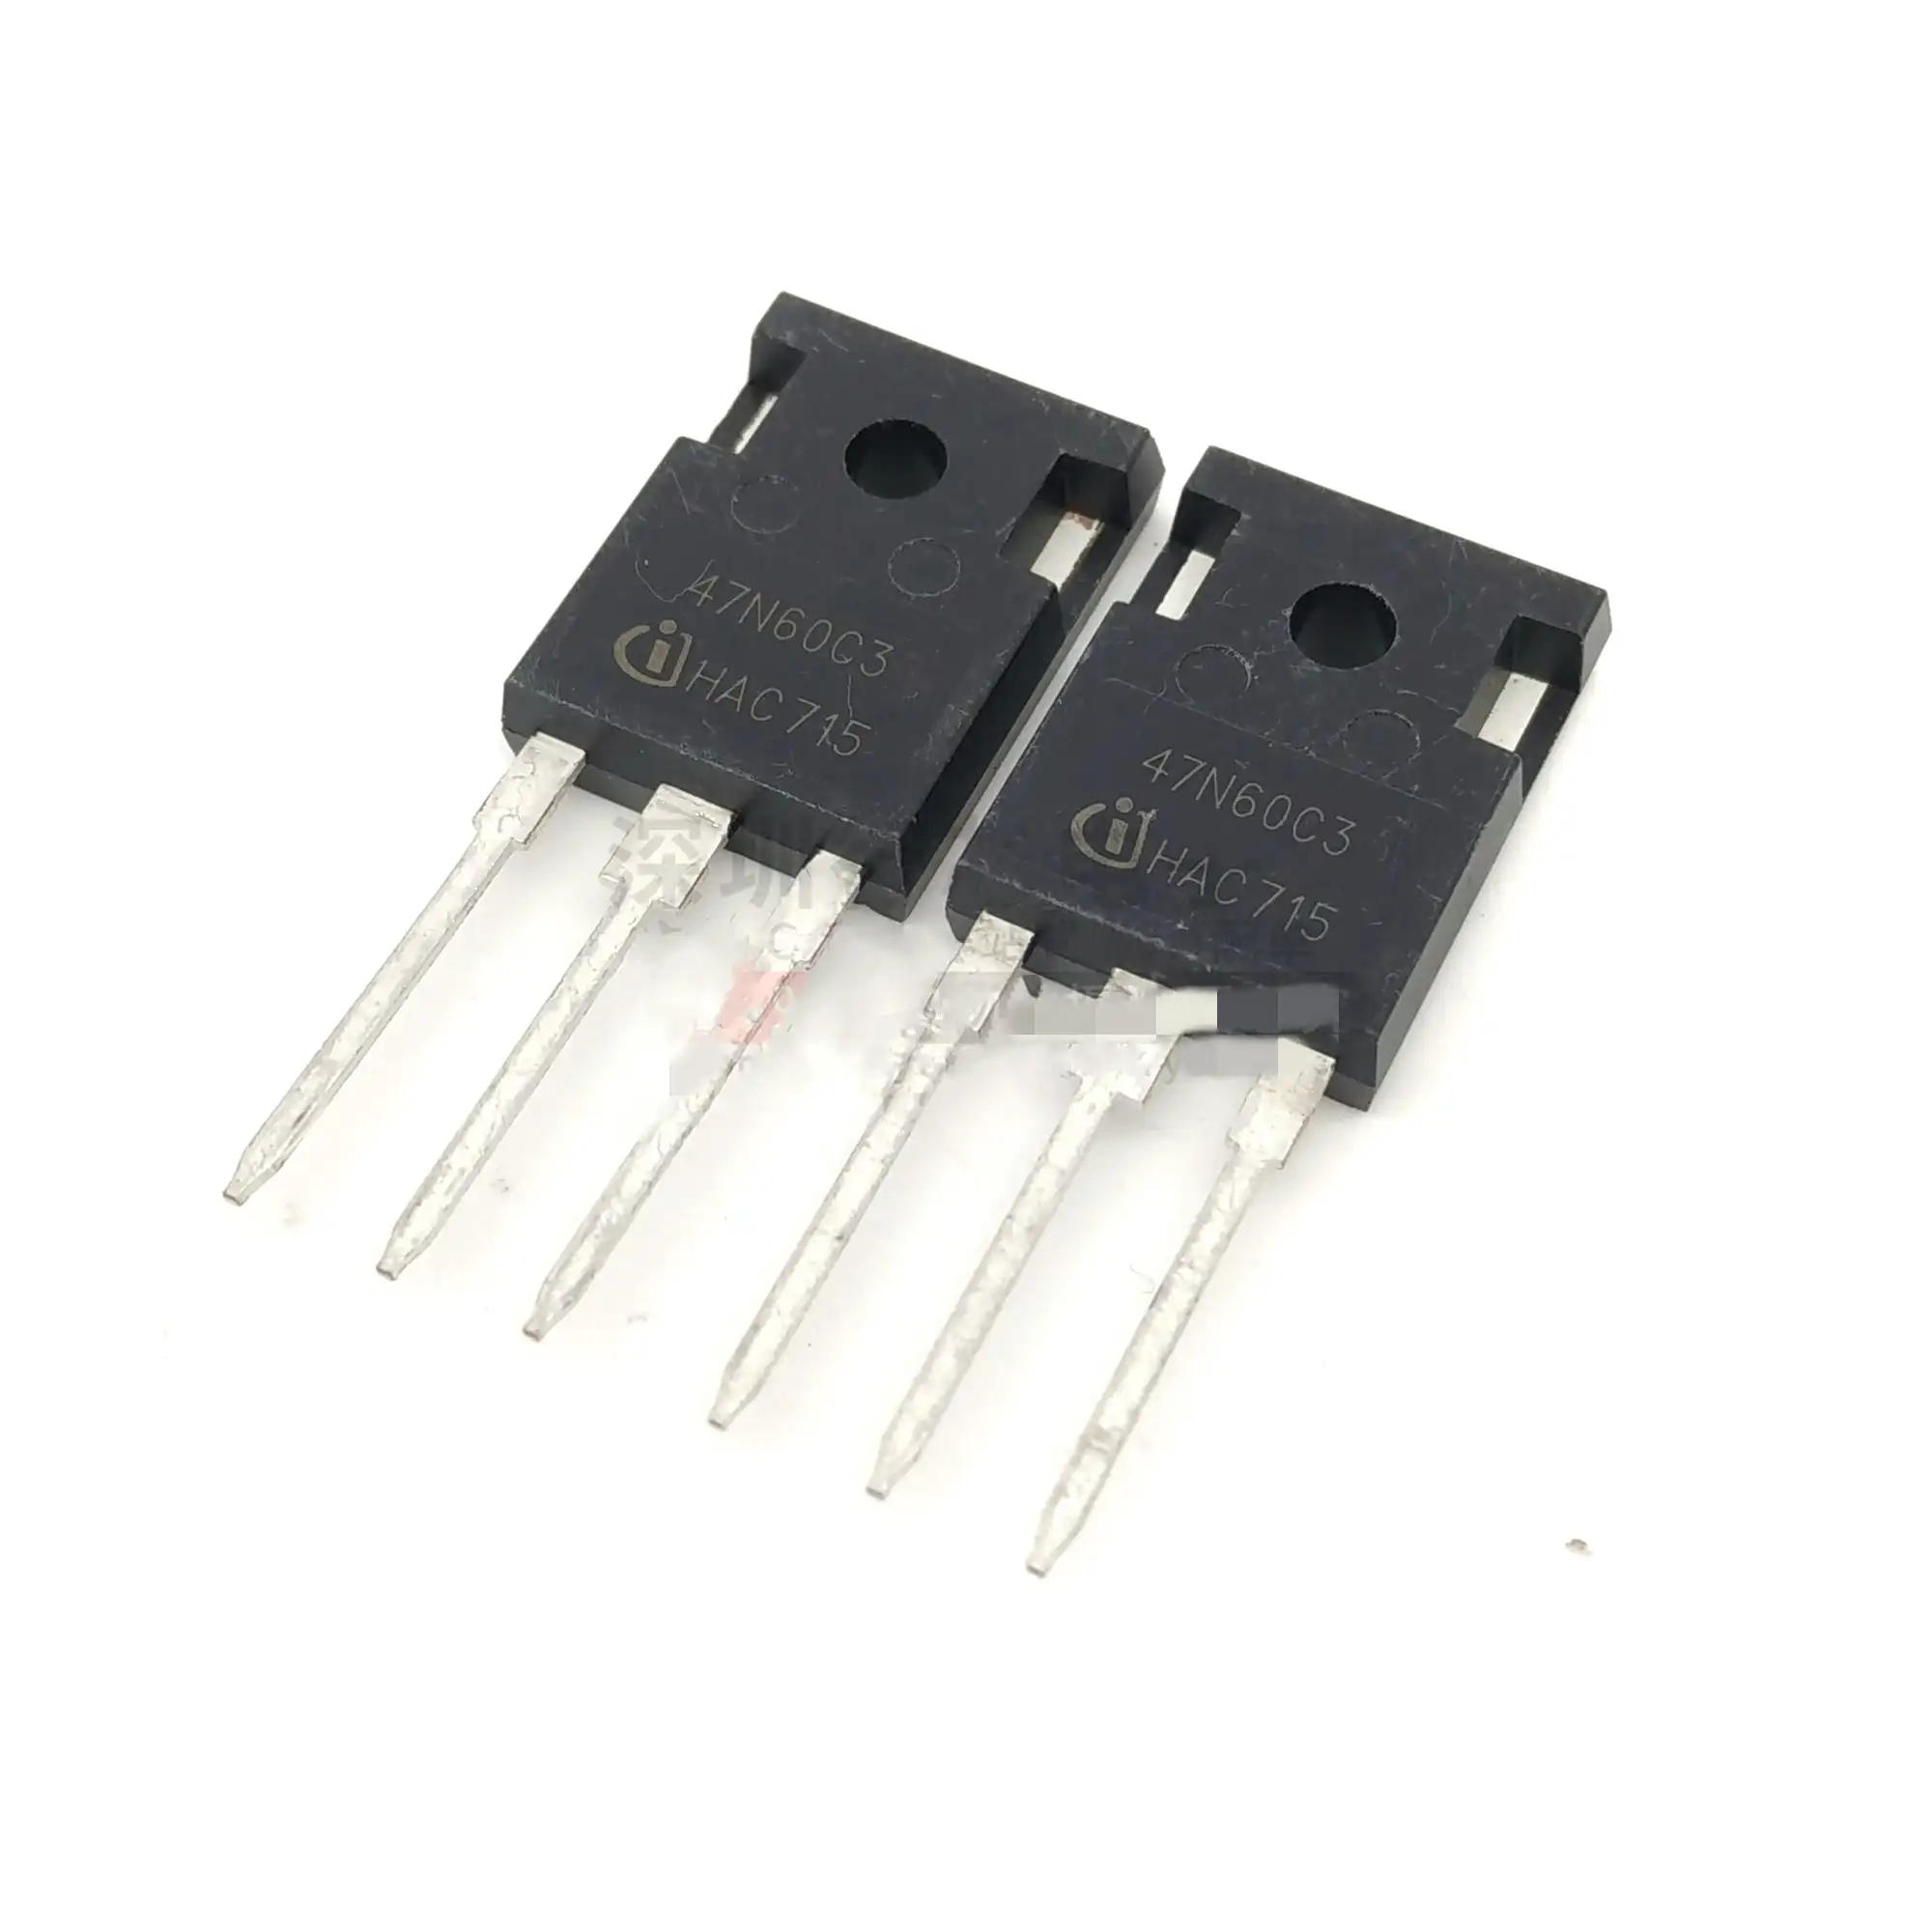 N-канальный МОП-транзистор SPW47N60C3 47N60c3, мощность 600 В, 47 А